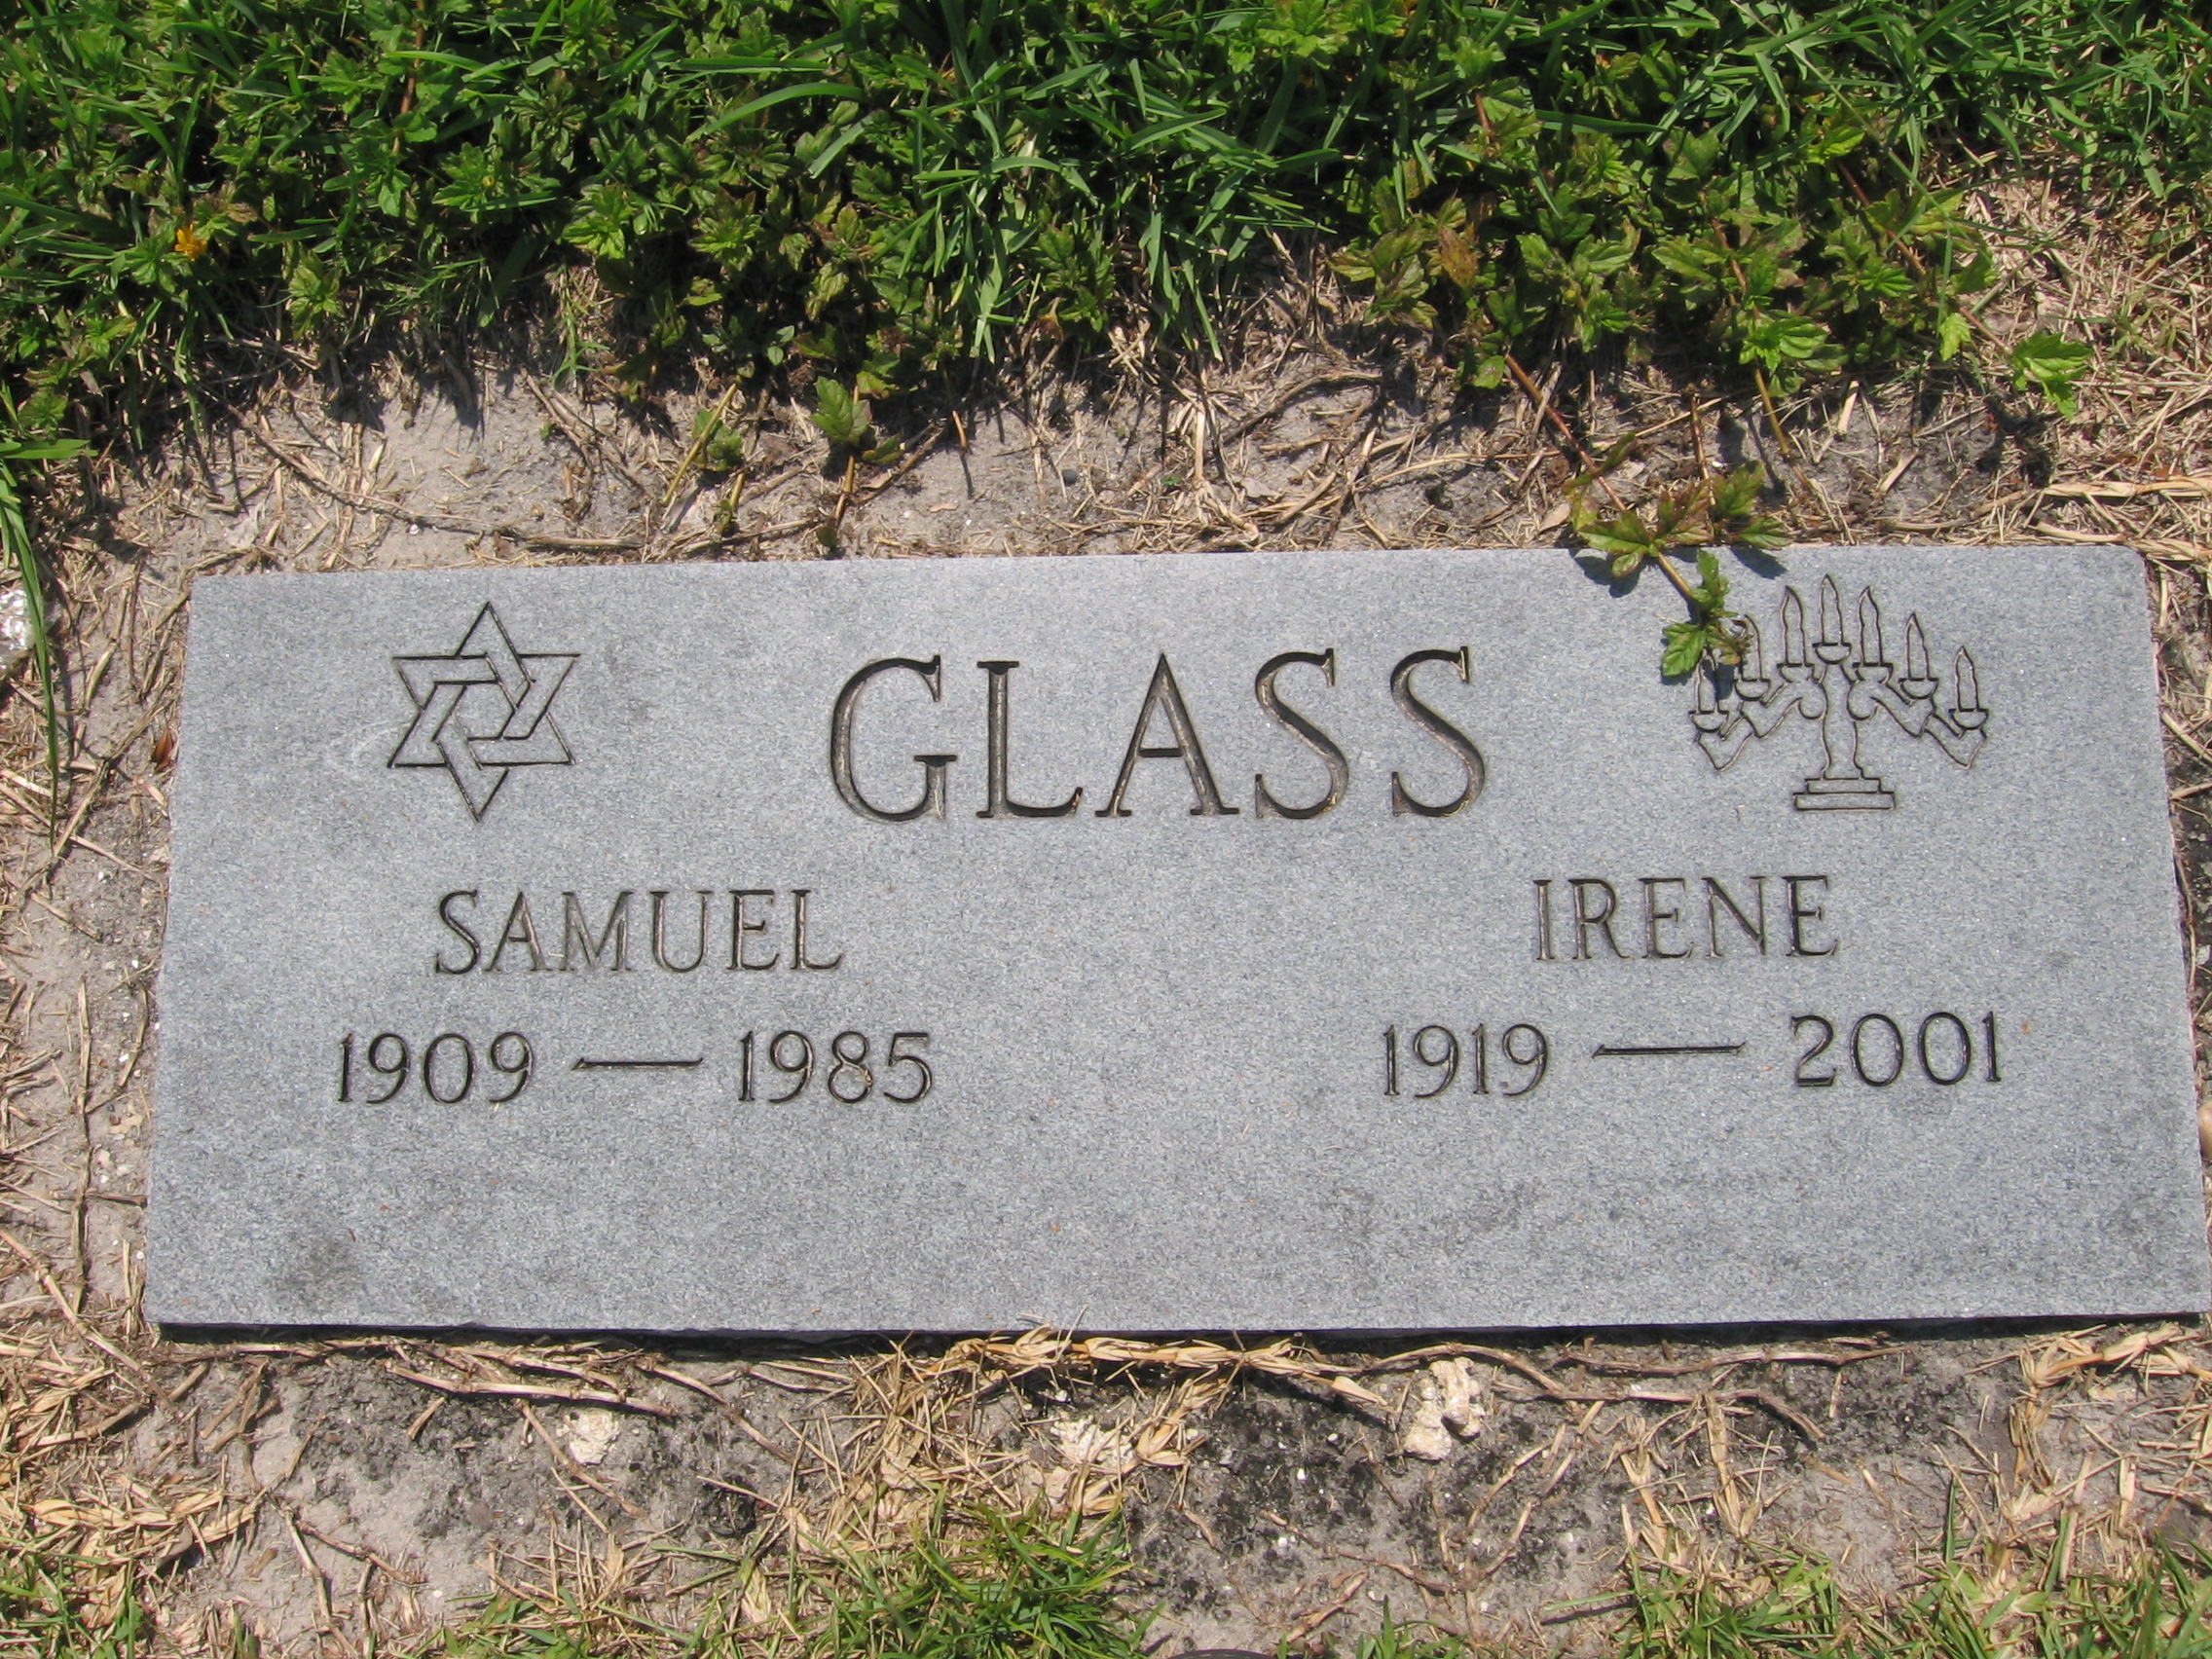 Irene Glass